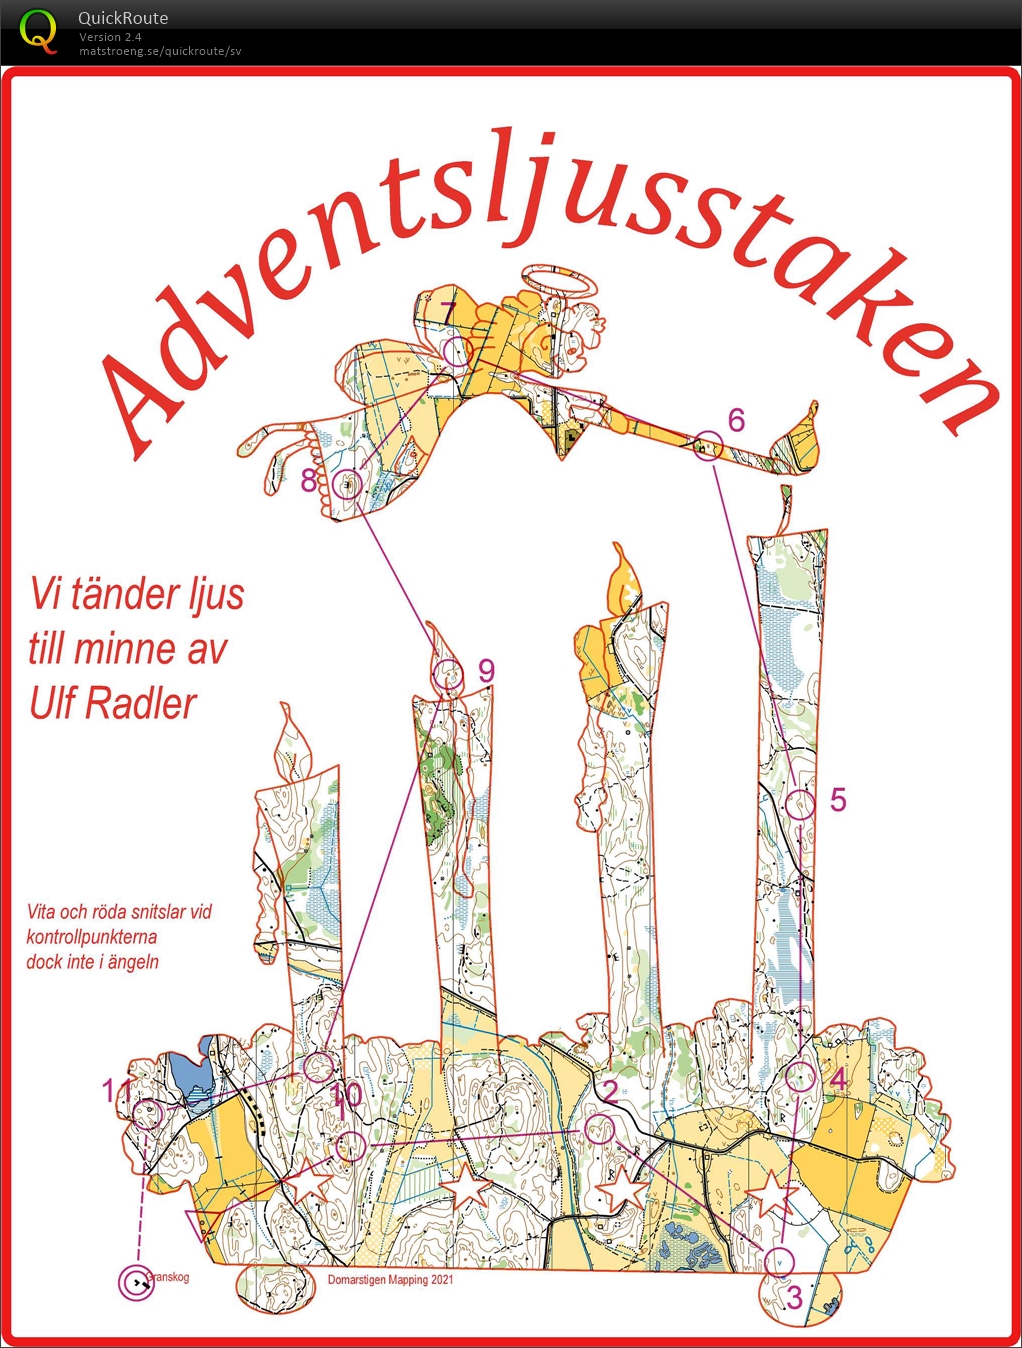 Adventsljusstaken - till minne av Ulf Radler (19/12/2021)